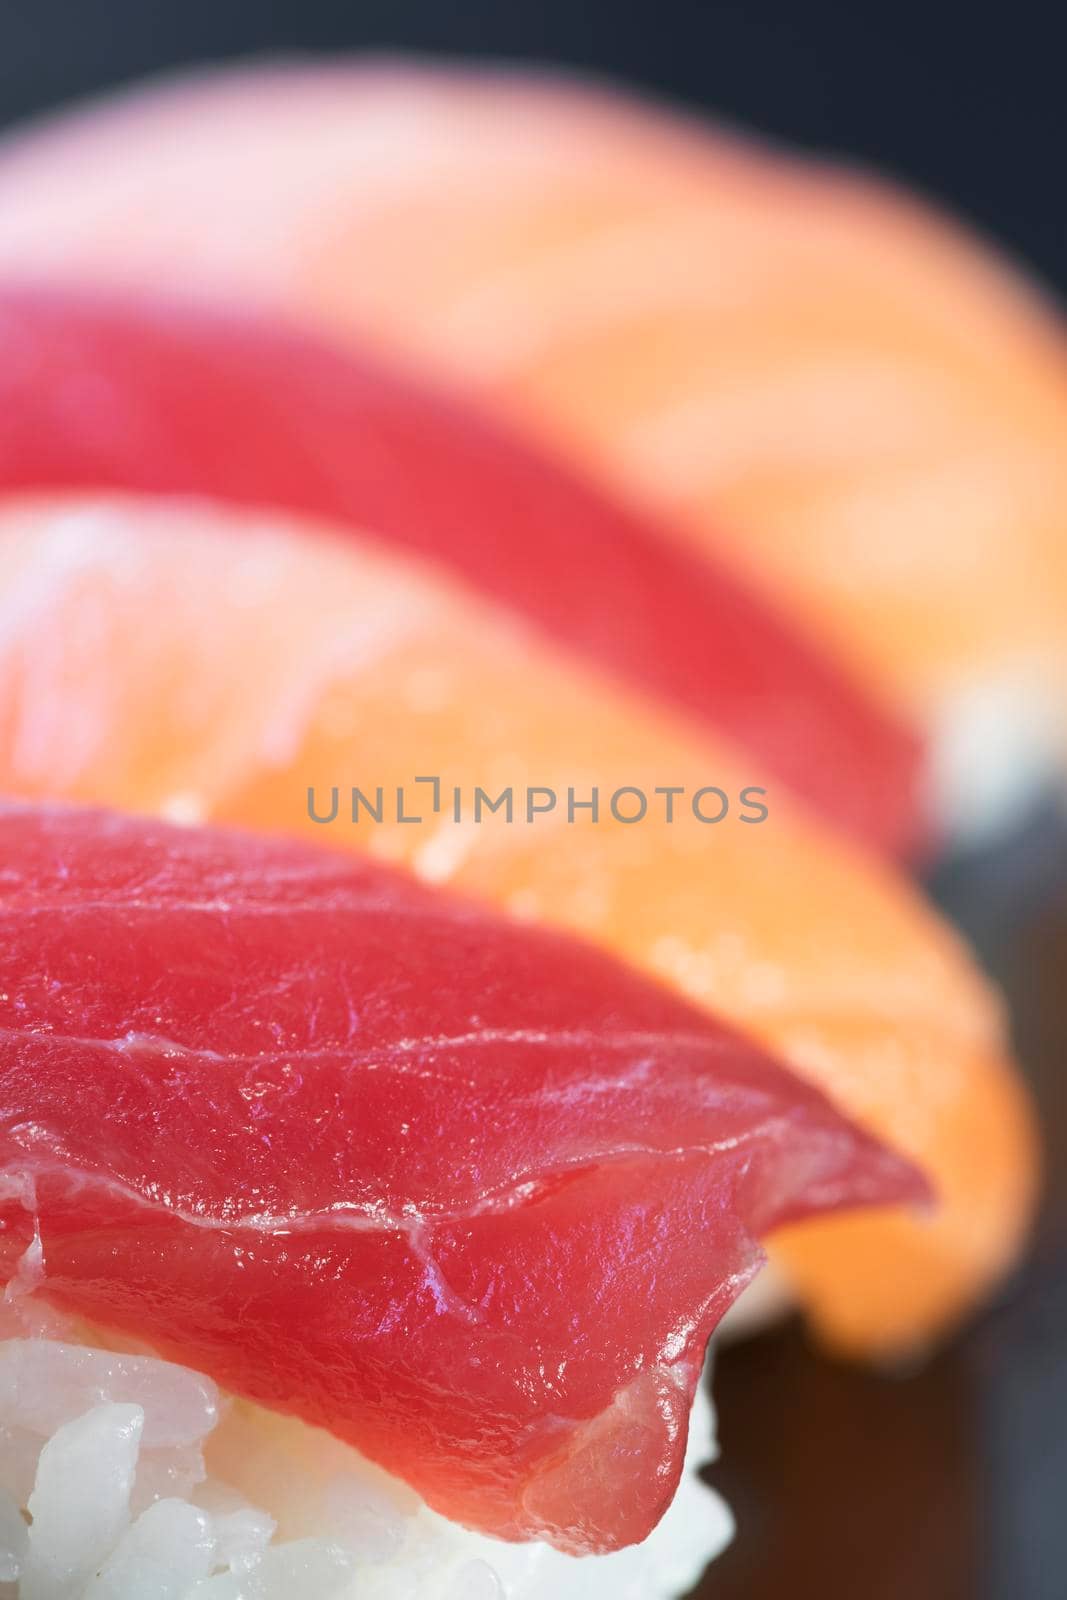 Tuna and salmon nigiri sushi rolls.